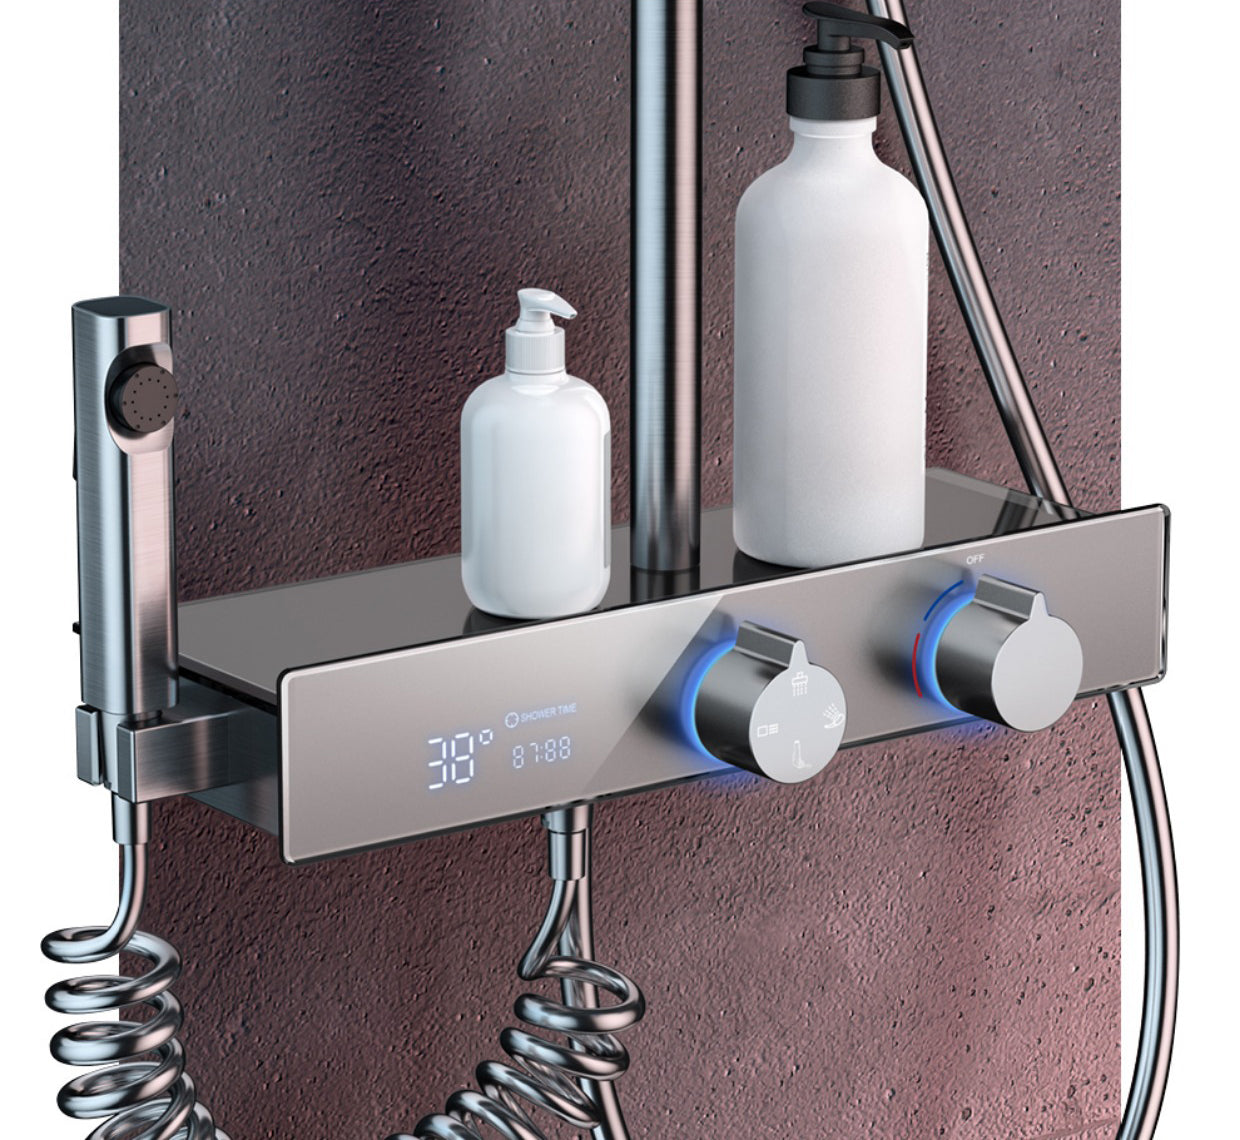 Homelody 4 Funktionen Duschsystem messing Duscharmatur Digitaler Bildschirm mit Ablage Duschset Regendusche aufputz mit Ablageschale Höhenverstellbares Duschset